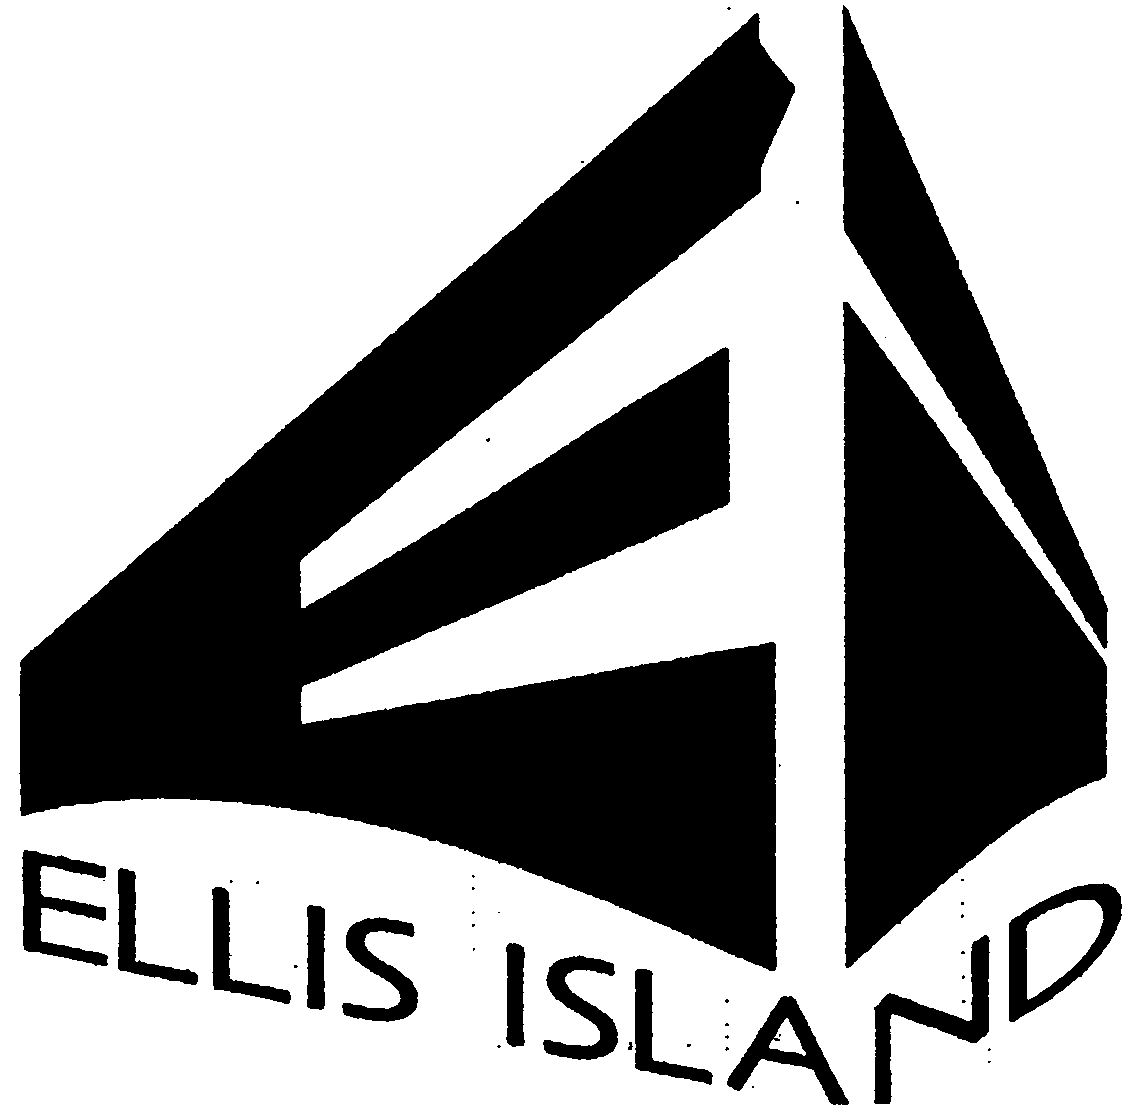  EI ELLIS ISLAND